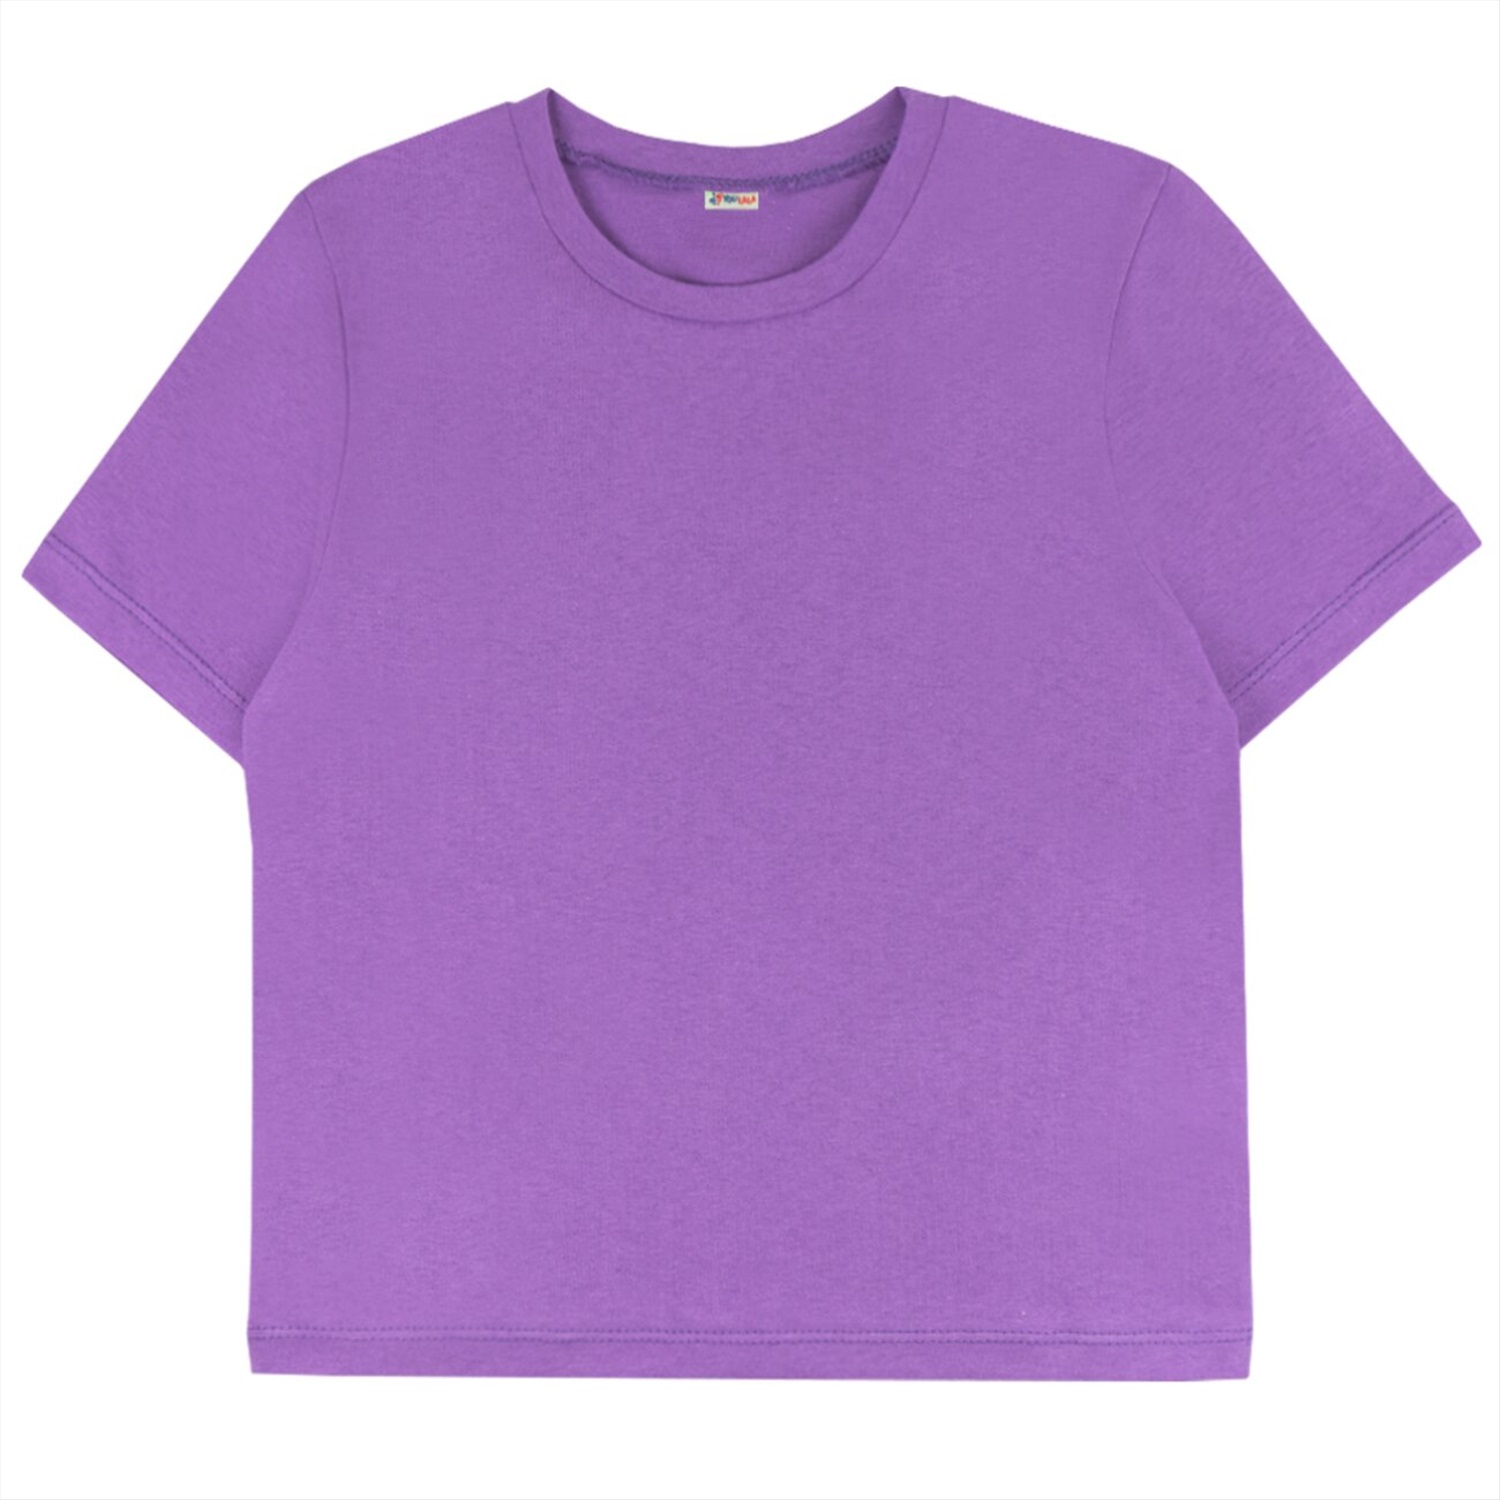 Футболка фиолетовая купить. Сиреневая футболка. Фиолетовая футболка. Фиолетовая футболка детская. Футболка для девочки фиолетовая.